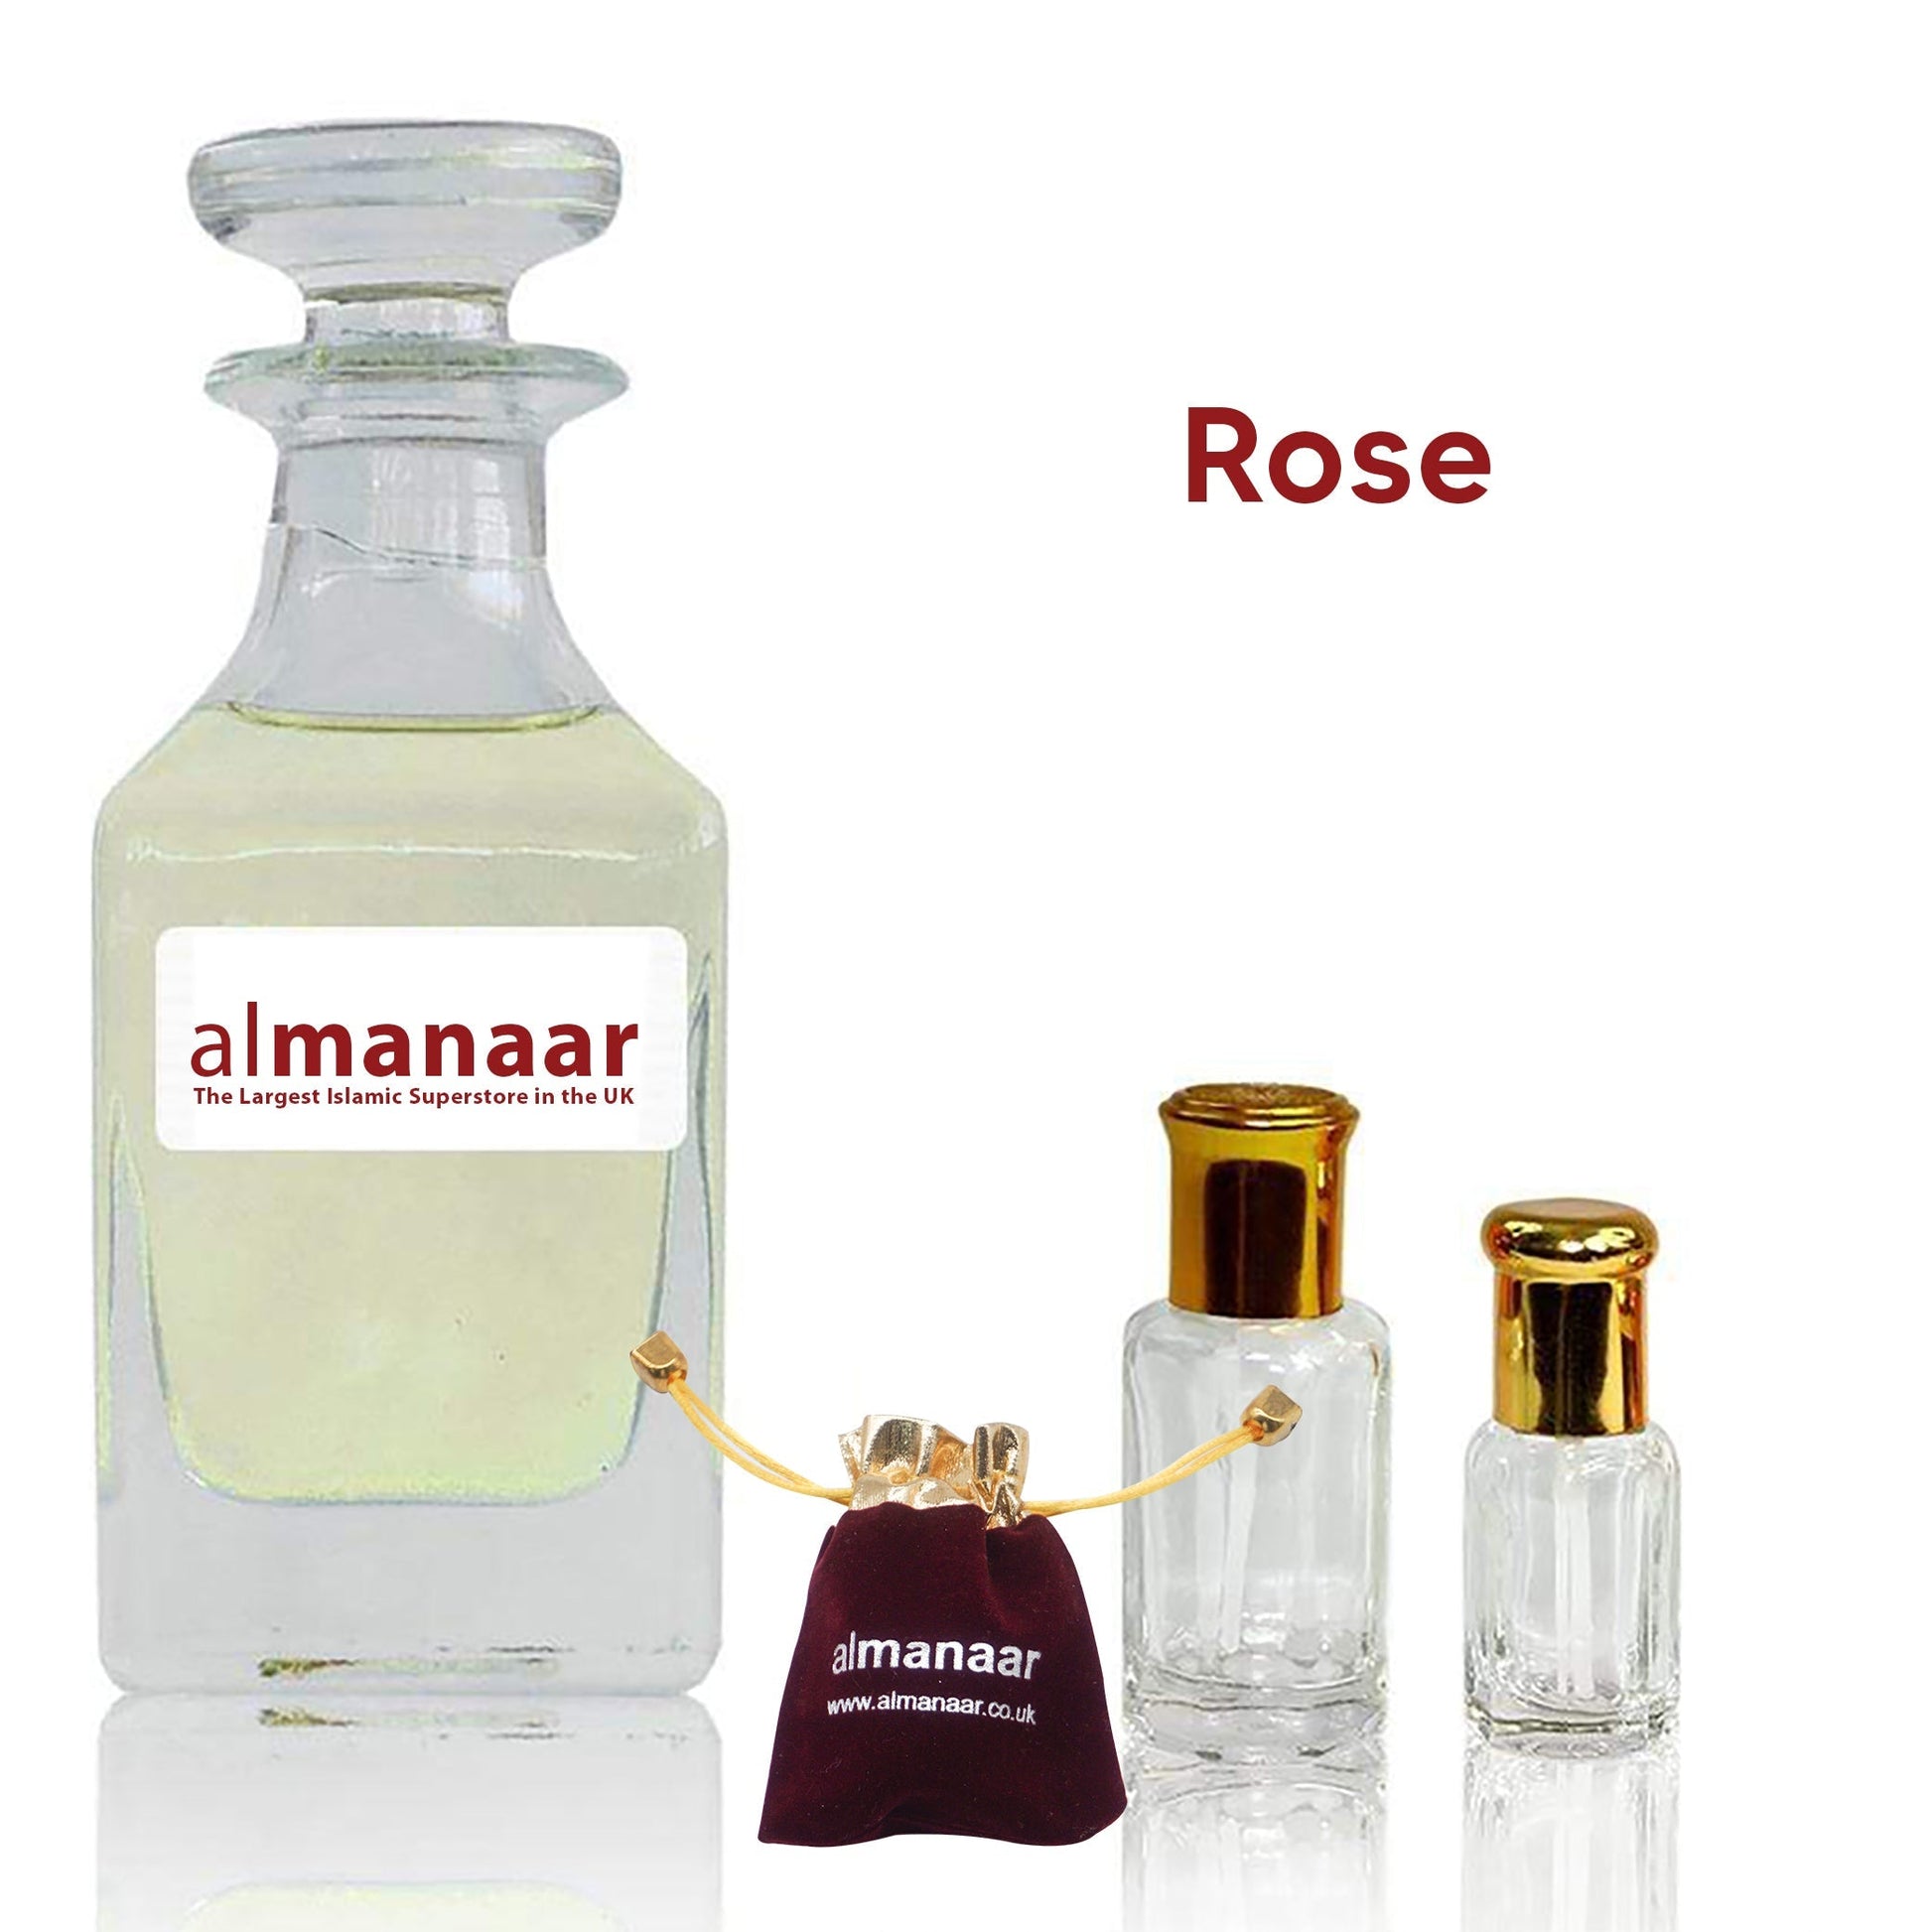 Rose - Concentrated Perfume Oil by almanaar-almanaar Islamic Store